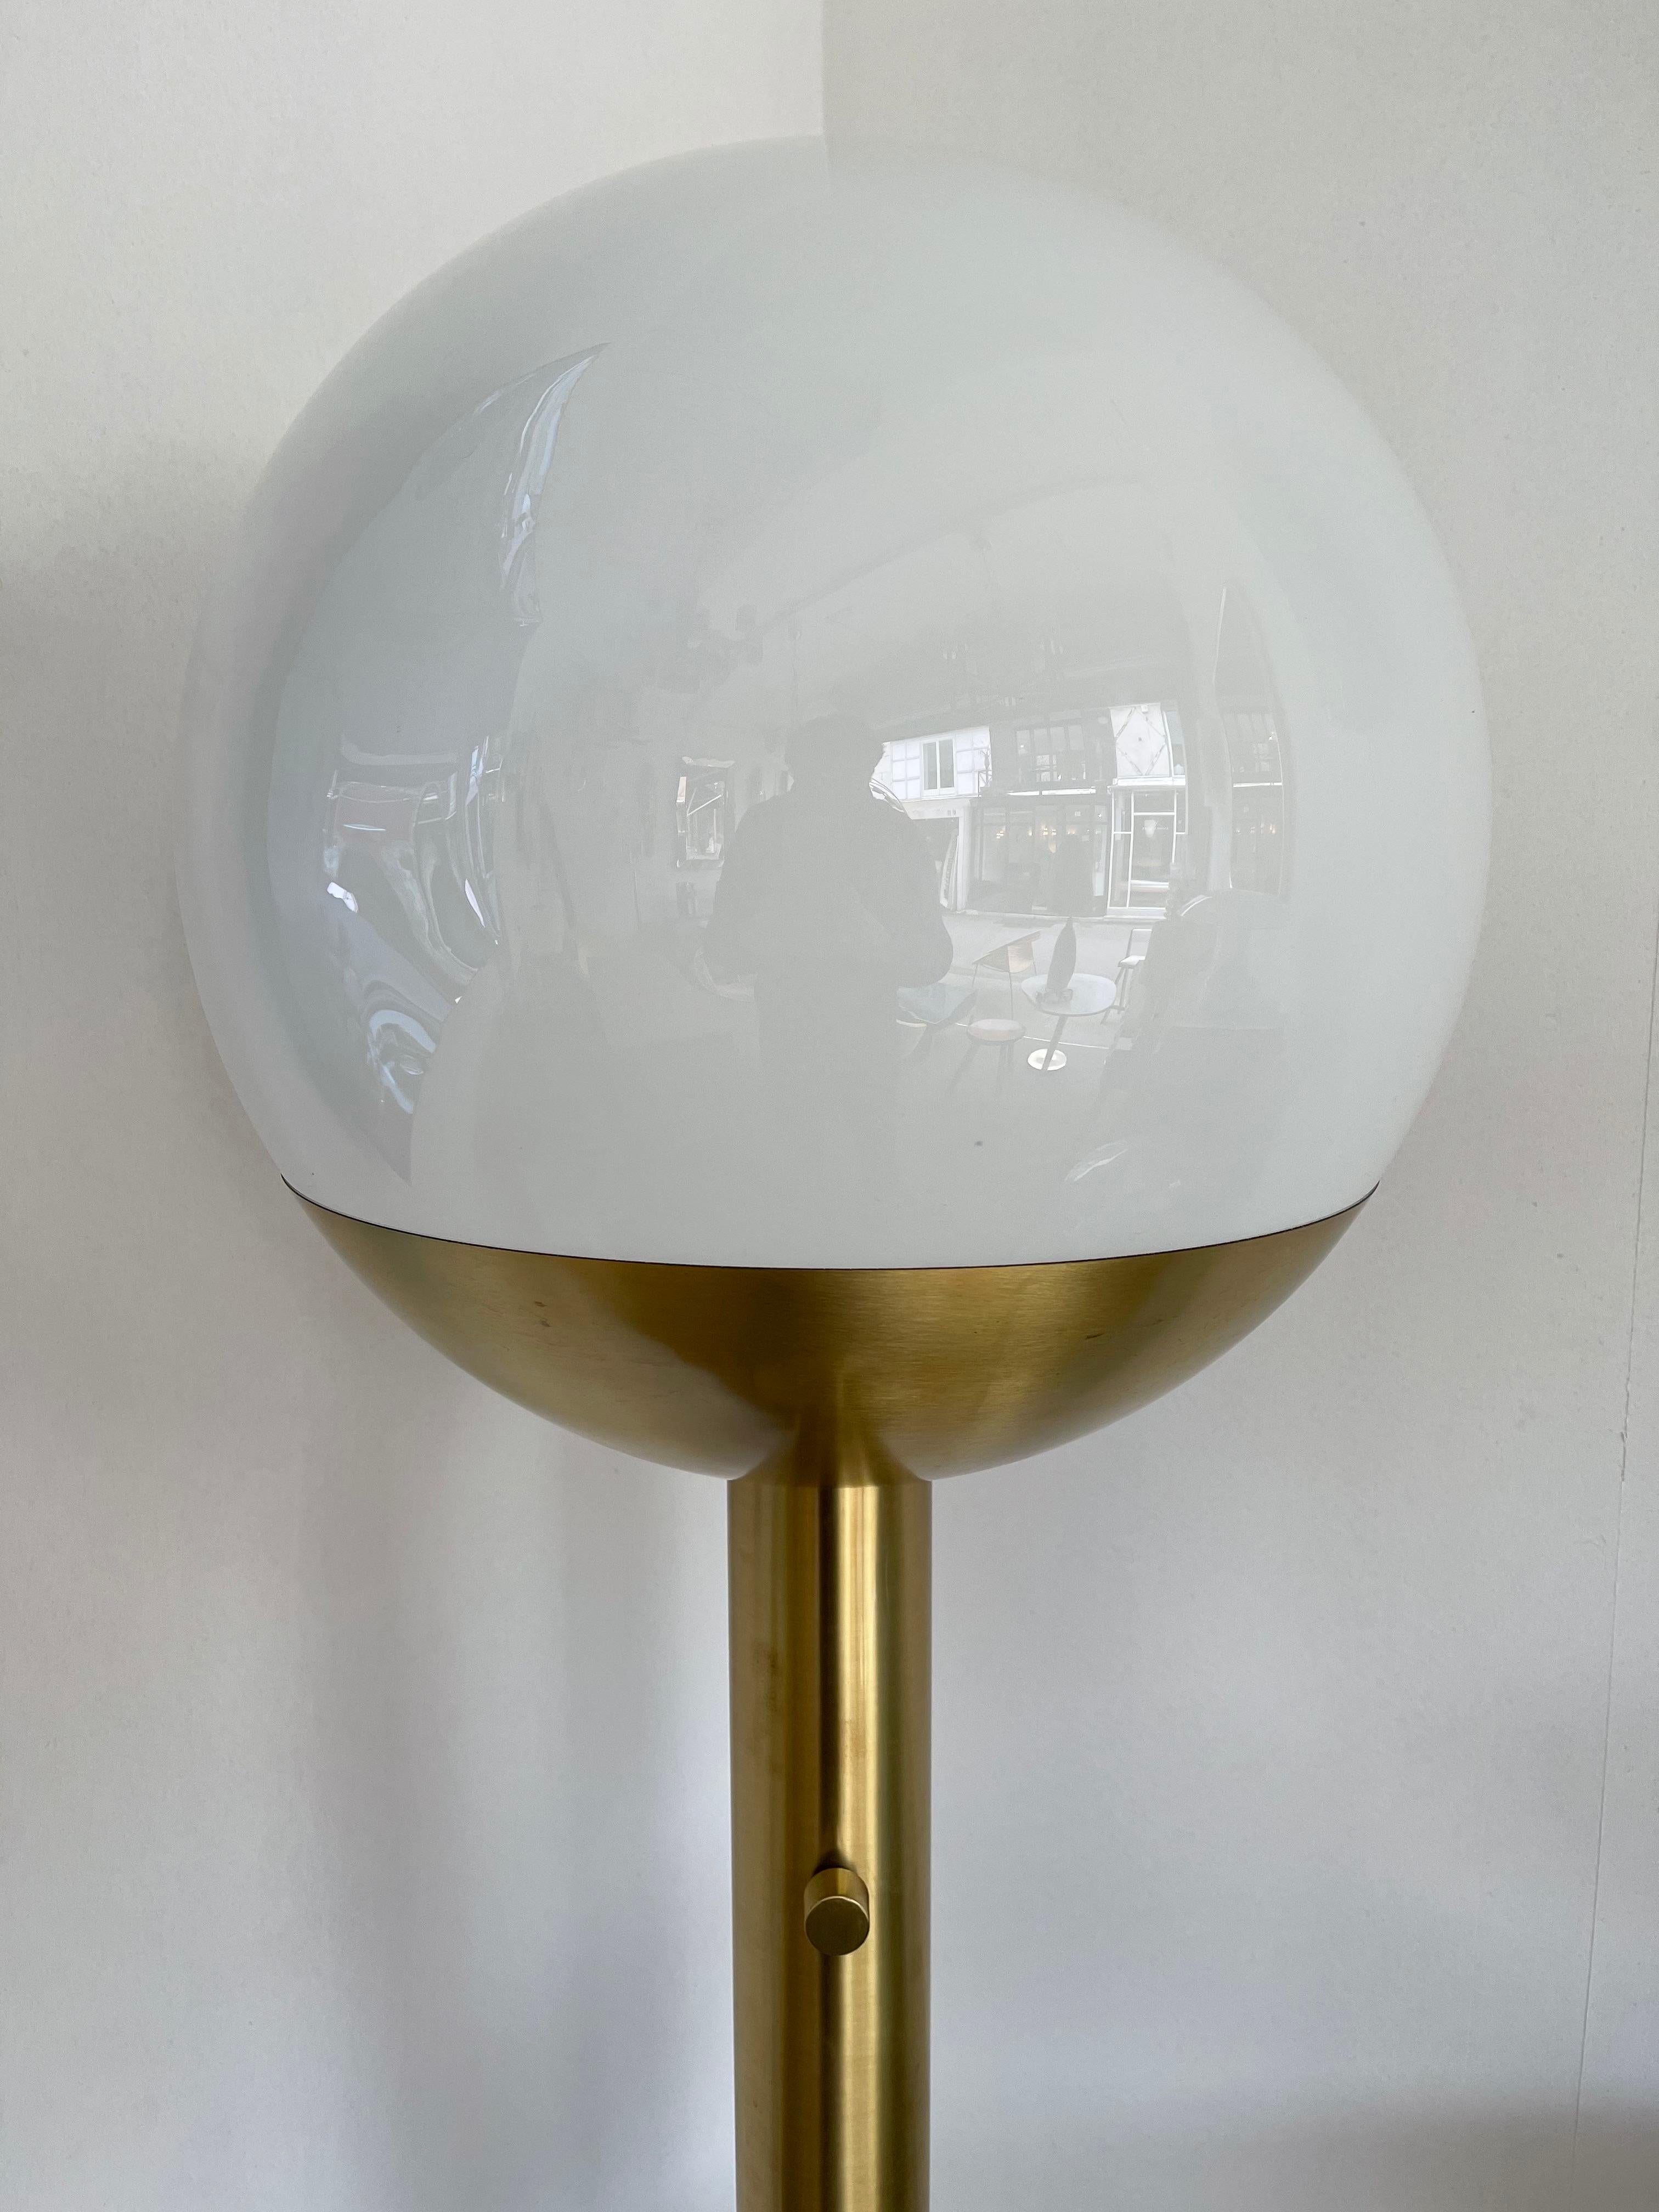 Tall brass and Murano opaline glass ball floor lamp model P428 by Pia Guidetti Crippa for the editor LUCI Illuminazione di interni. Famous design like Sciolari, Reggiani, Willy Rizzo, Stilux, Lumi, Arteluce, Stilnovo.